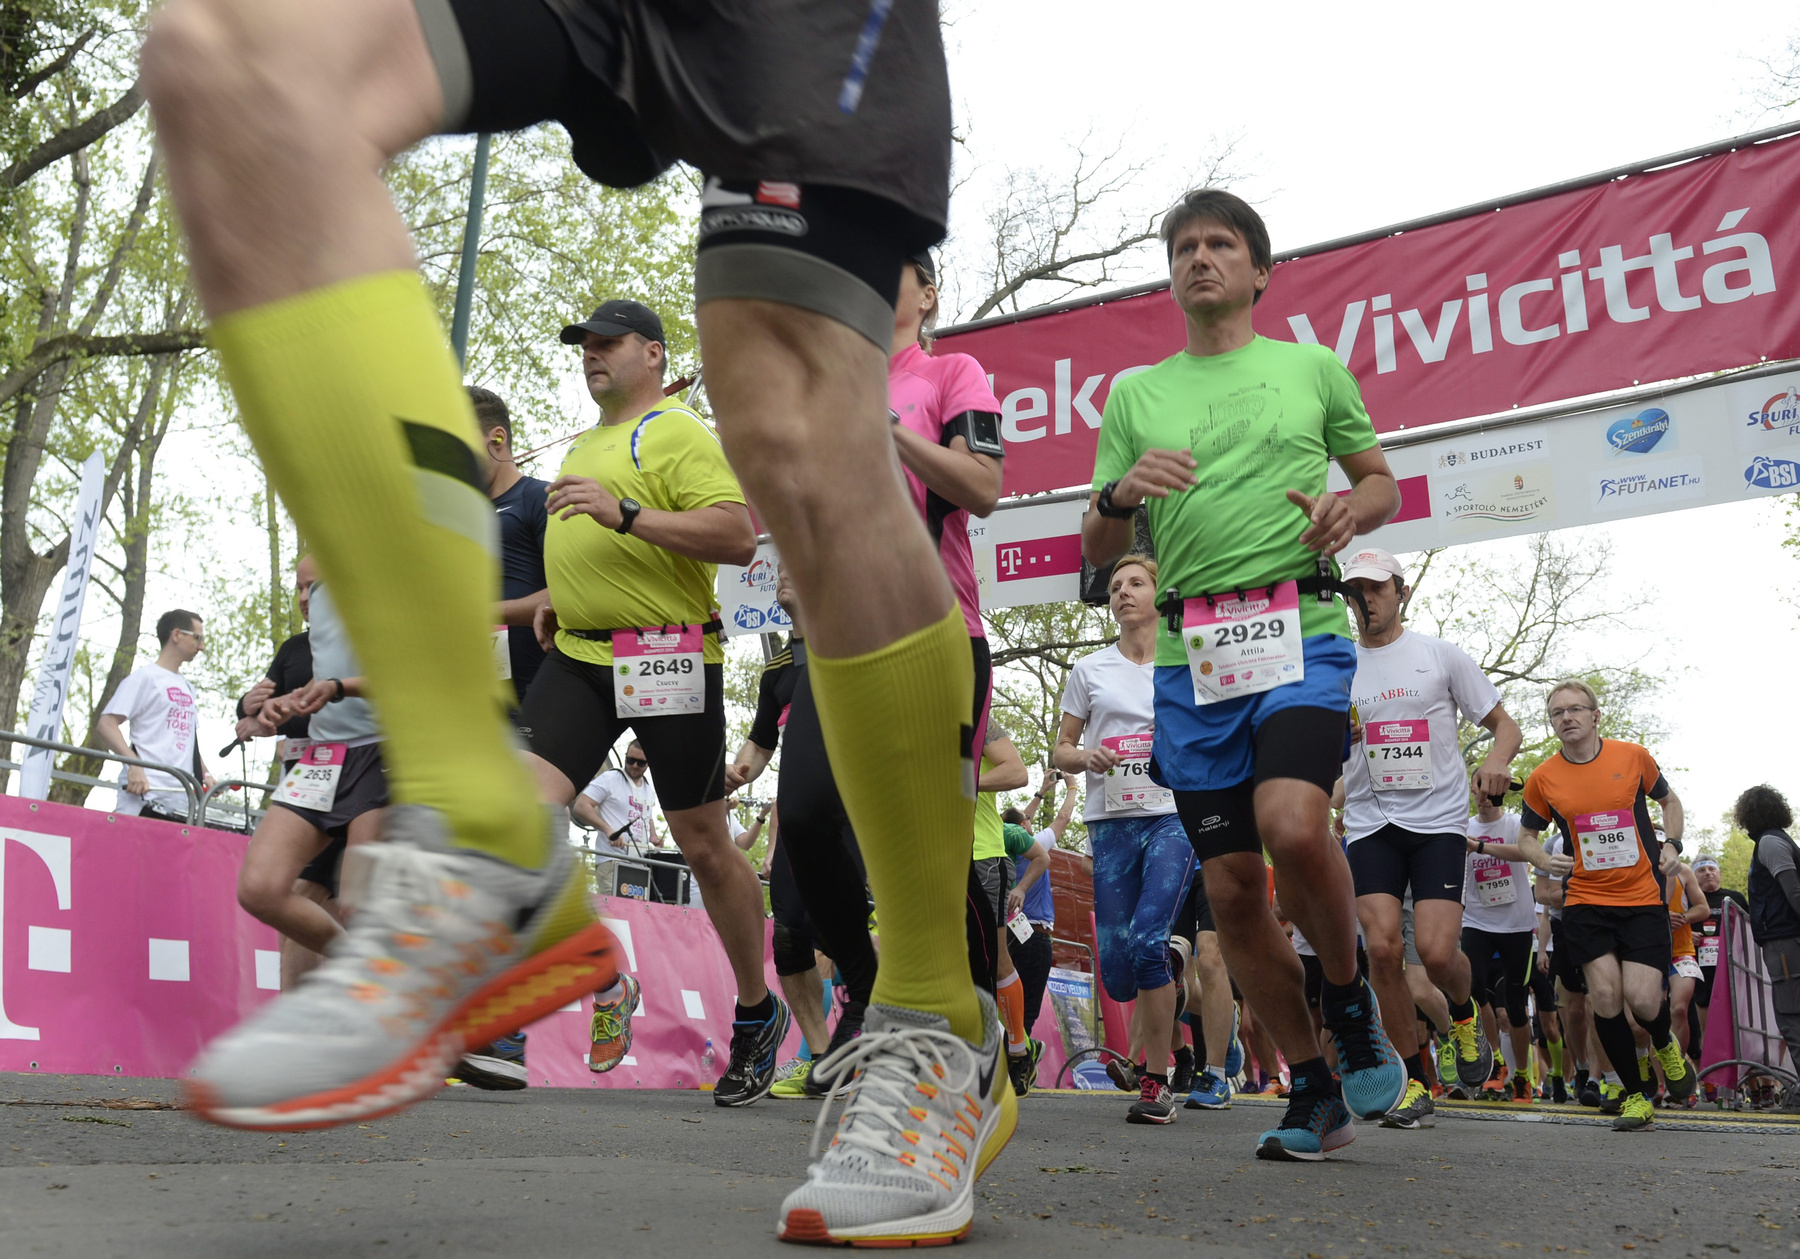 A klasszikus 10 kilométeres Telekom Vivicittá Városvédő Futáson a férfiaknál szoros verseny alakult ki az élen, végül 22 mp előnnyel Burucs Ferenc győzött 32:59-es idővel. A Midicittán Pelsőczy Attila volt a legjobb 23:59-es eredményével.